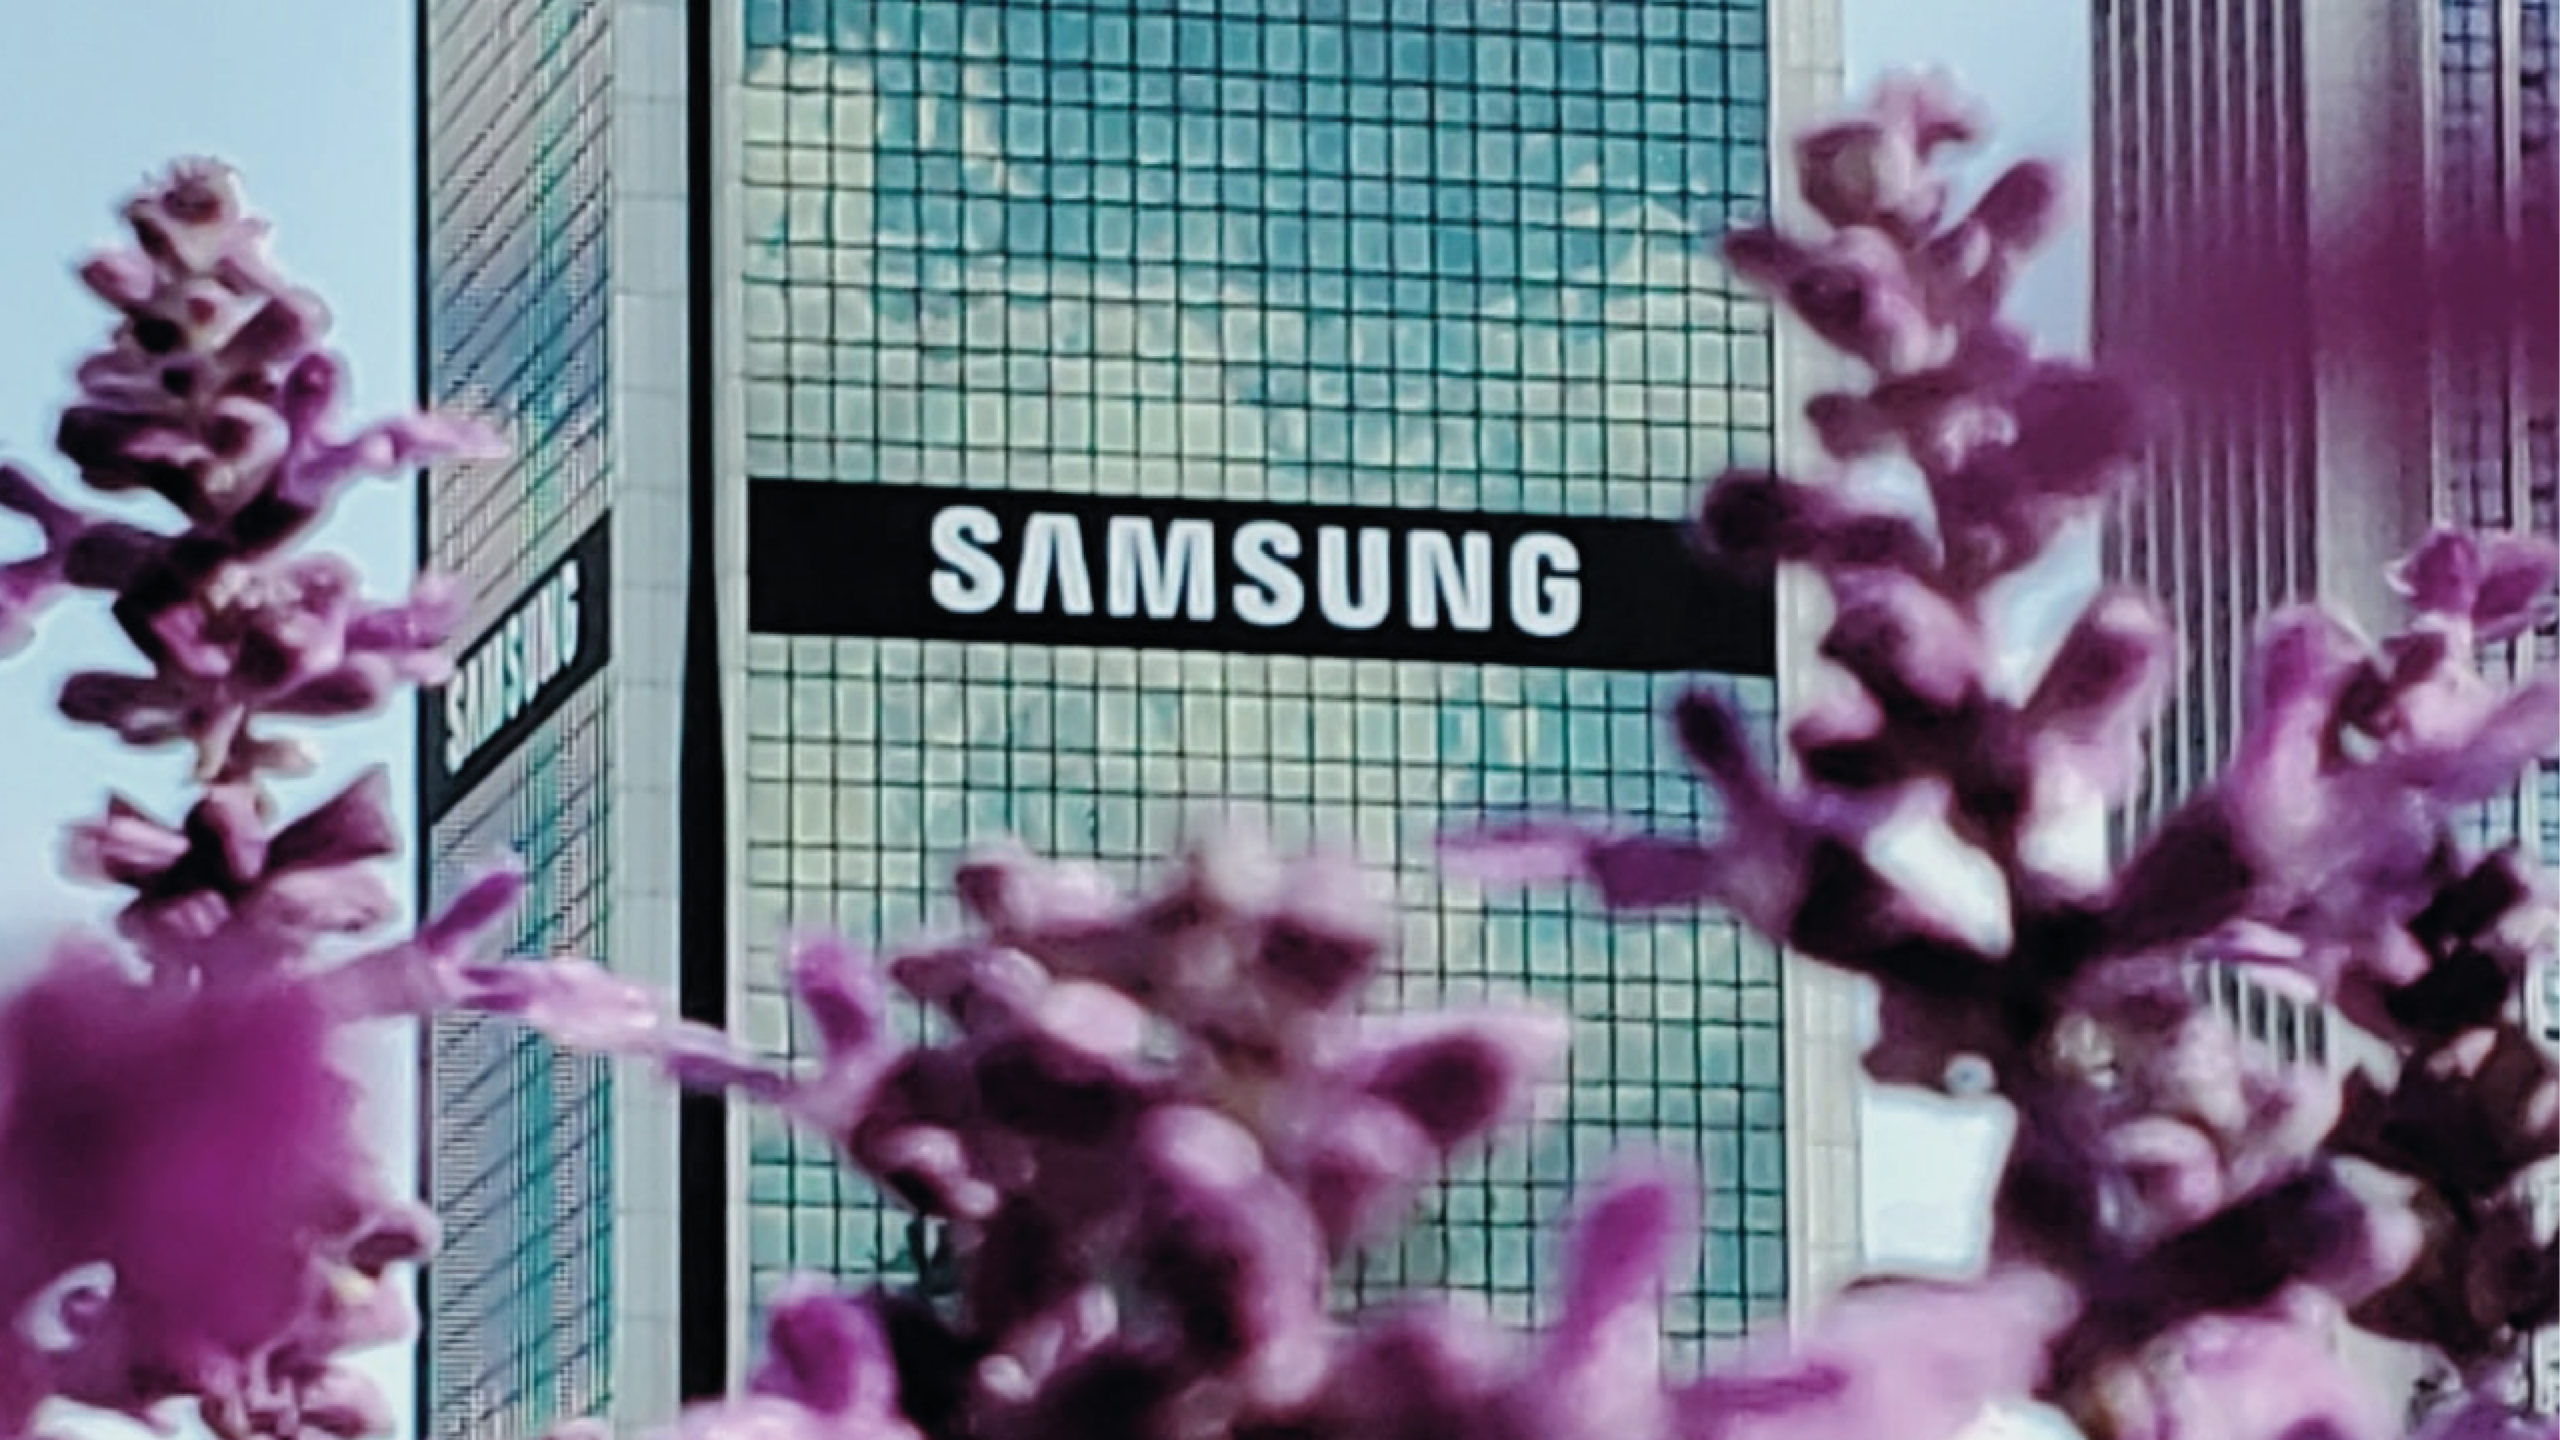 Samsung descarta romper con Telcel; escasez de chips generó falta de equipos